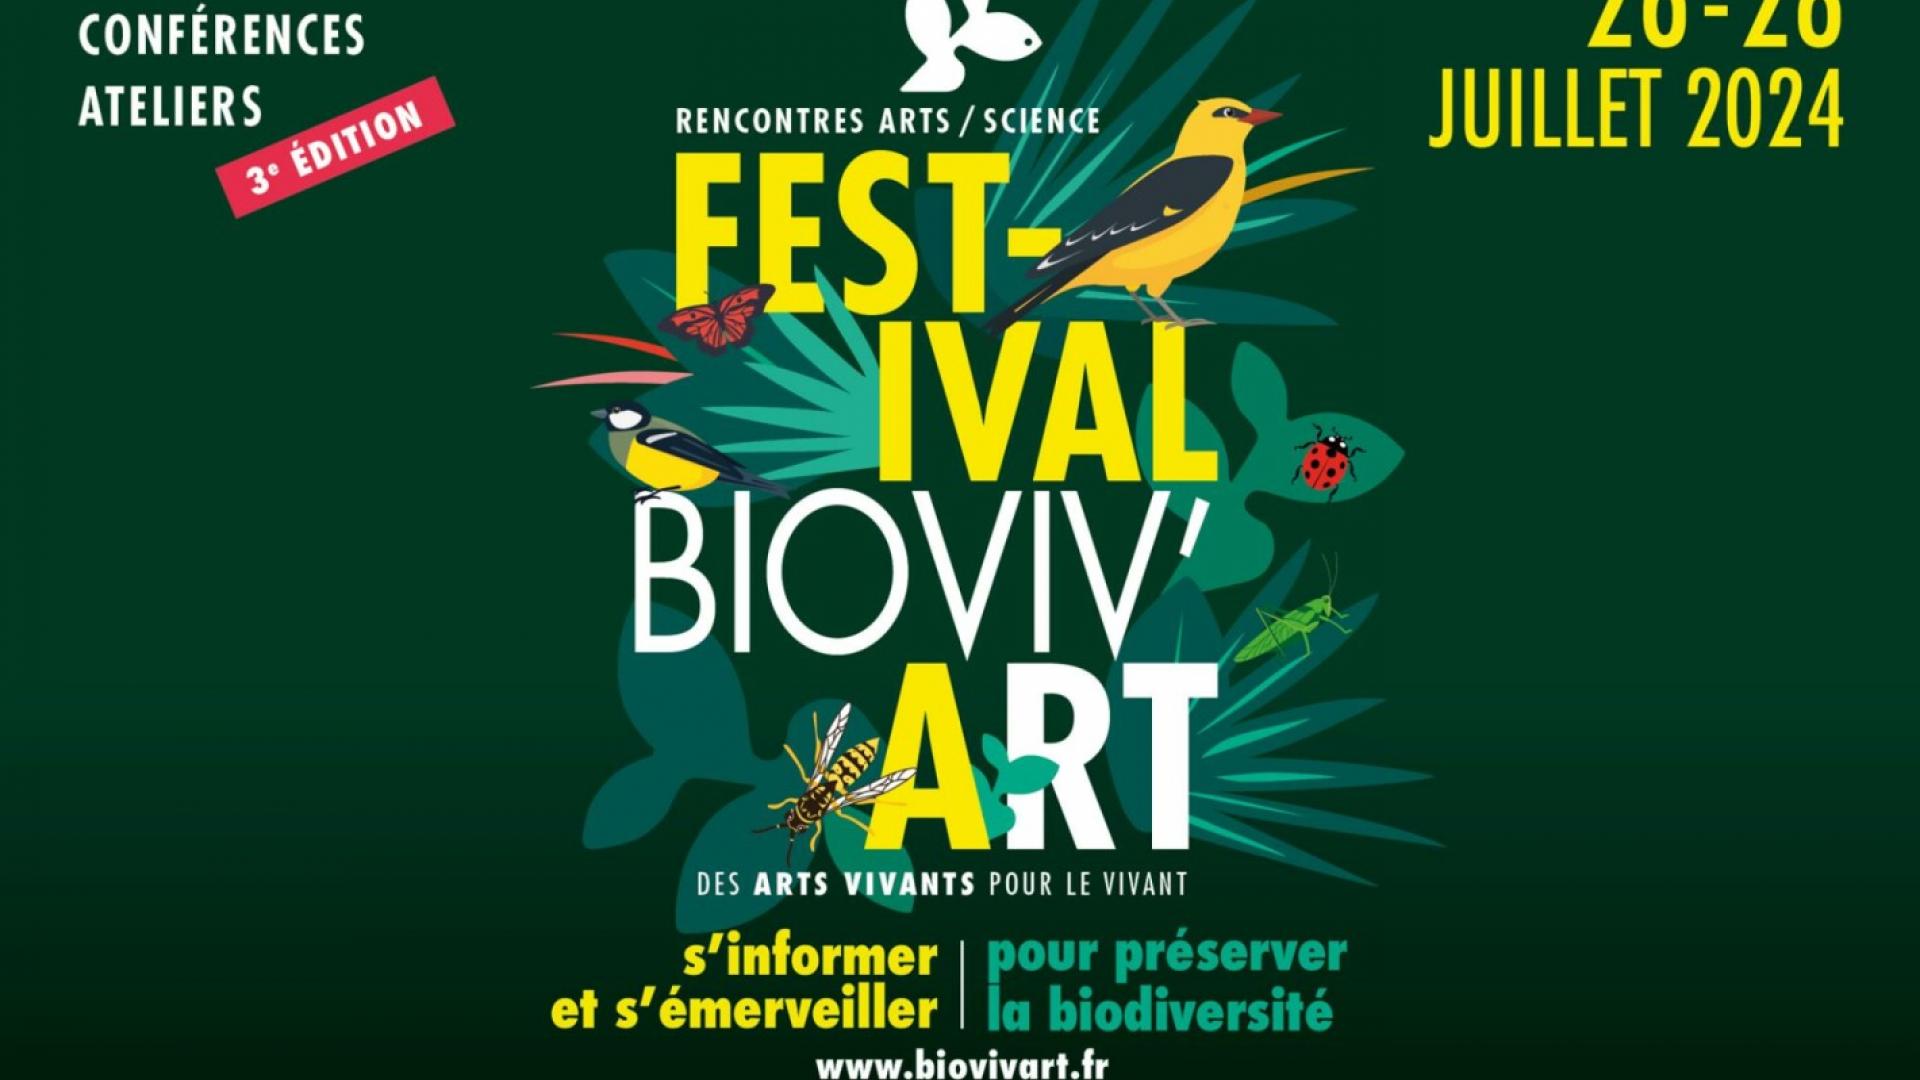 FESTIVAL BIOVIV'ART - DES ARTS VIVANTS POUR LE VIVANT